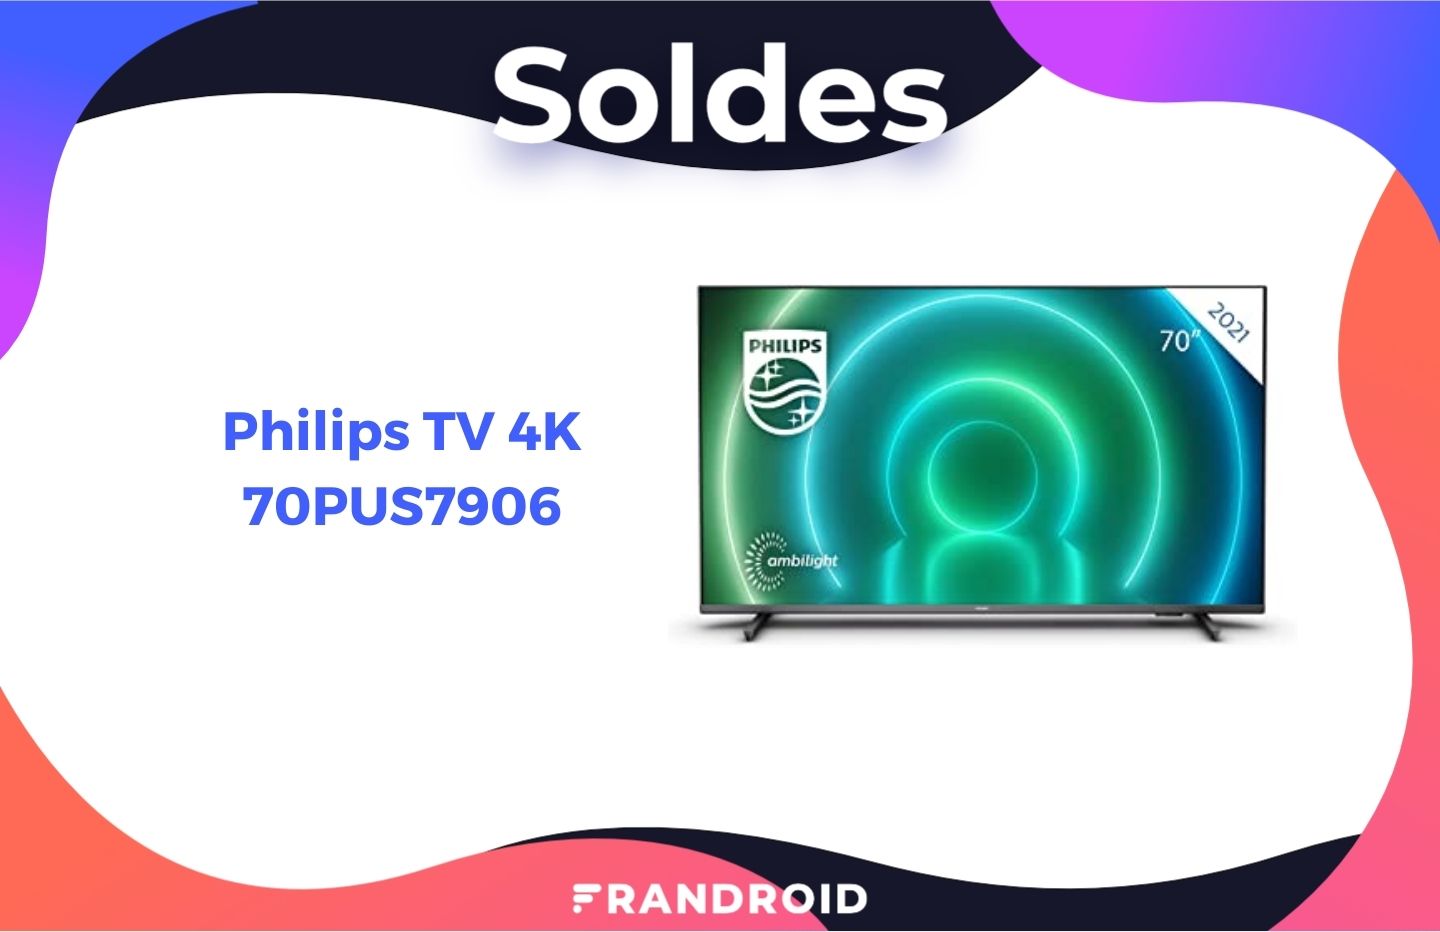 790€, c’est le prix hallucinant de ce TV 4K Philips 70 pouces pendant les soldes - Frandroid